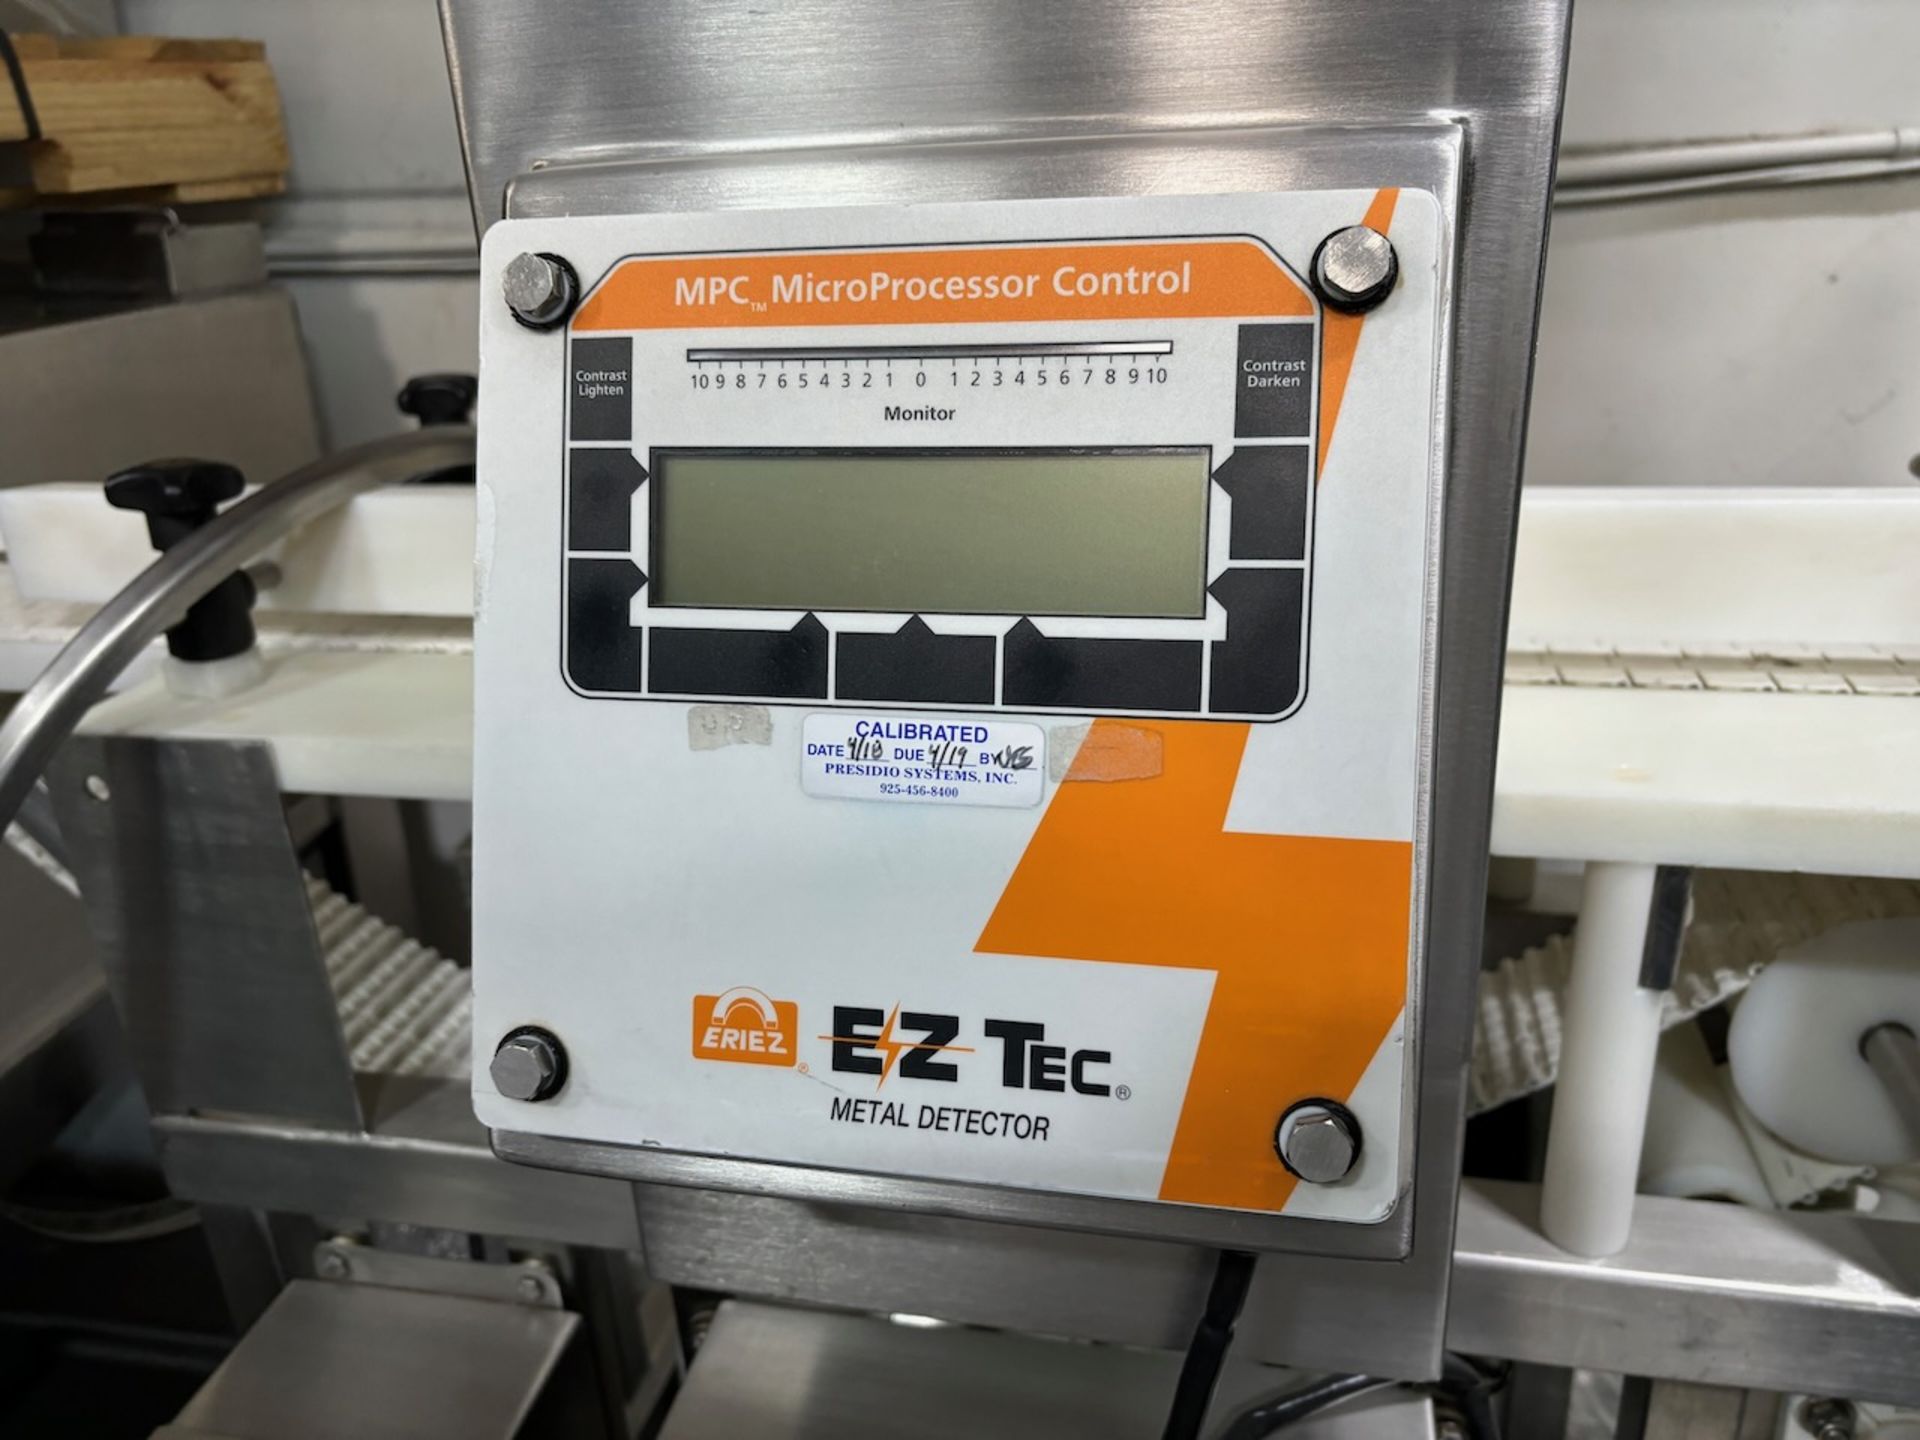 Eriez metal detector - Image 2 of 7